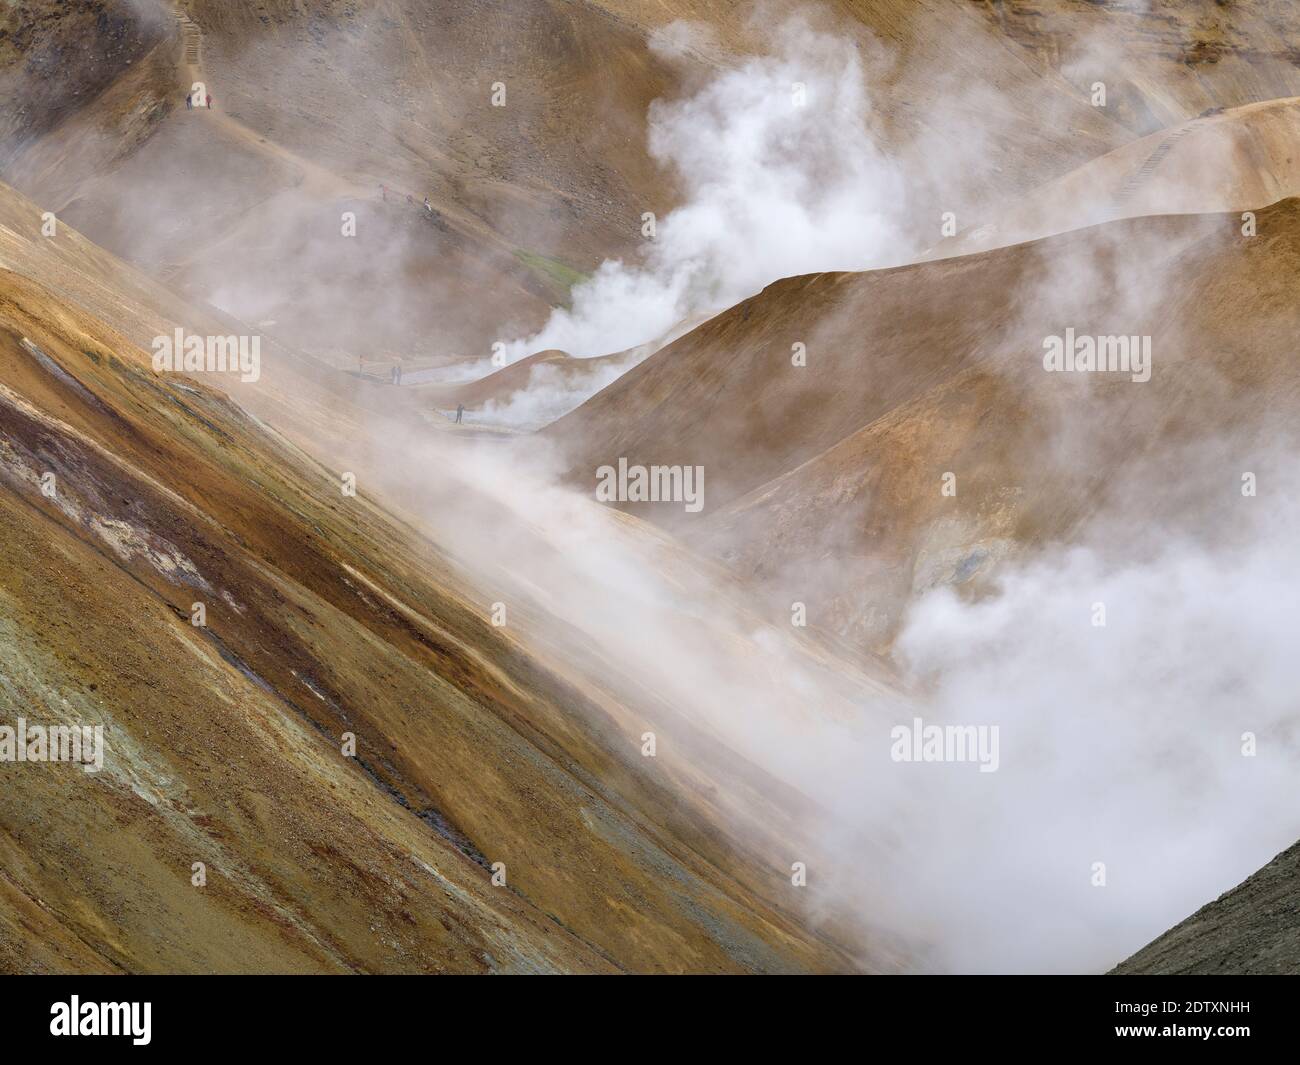 Randonneurs dans la zone géothermique Hveradalir dans les montagnes Kerlingarfjoell dans les hautes terres de l'Islande. Europe, Europe du Nord, Islande, août Banque D'Images